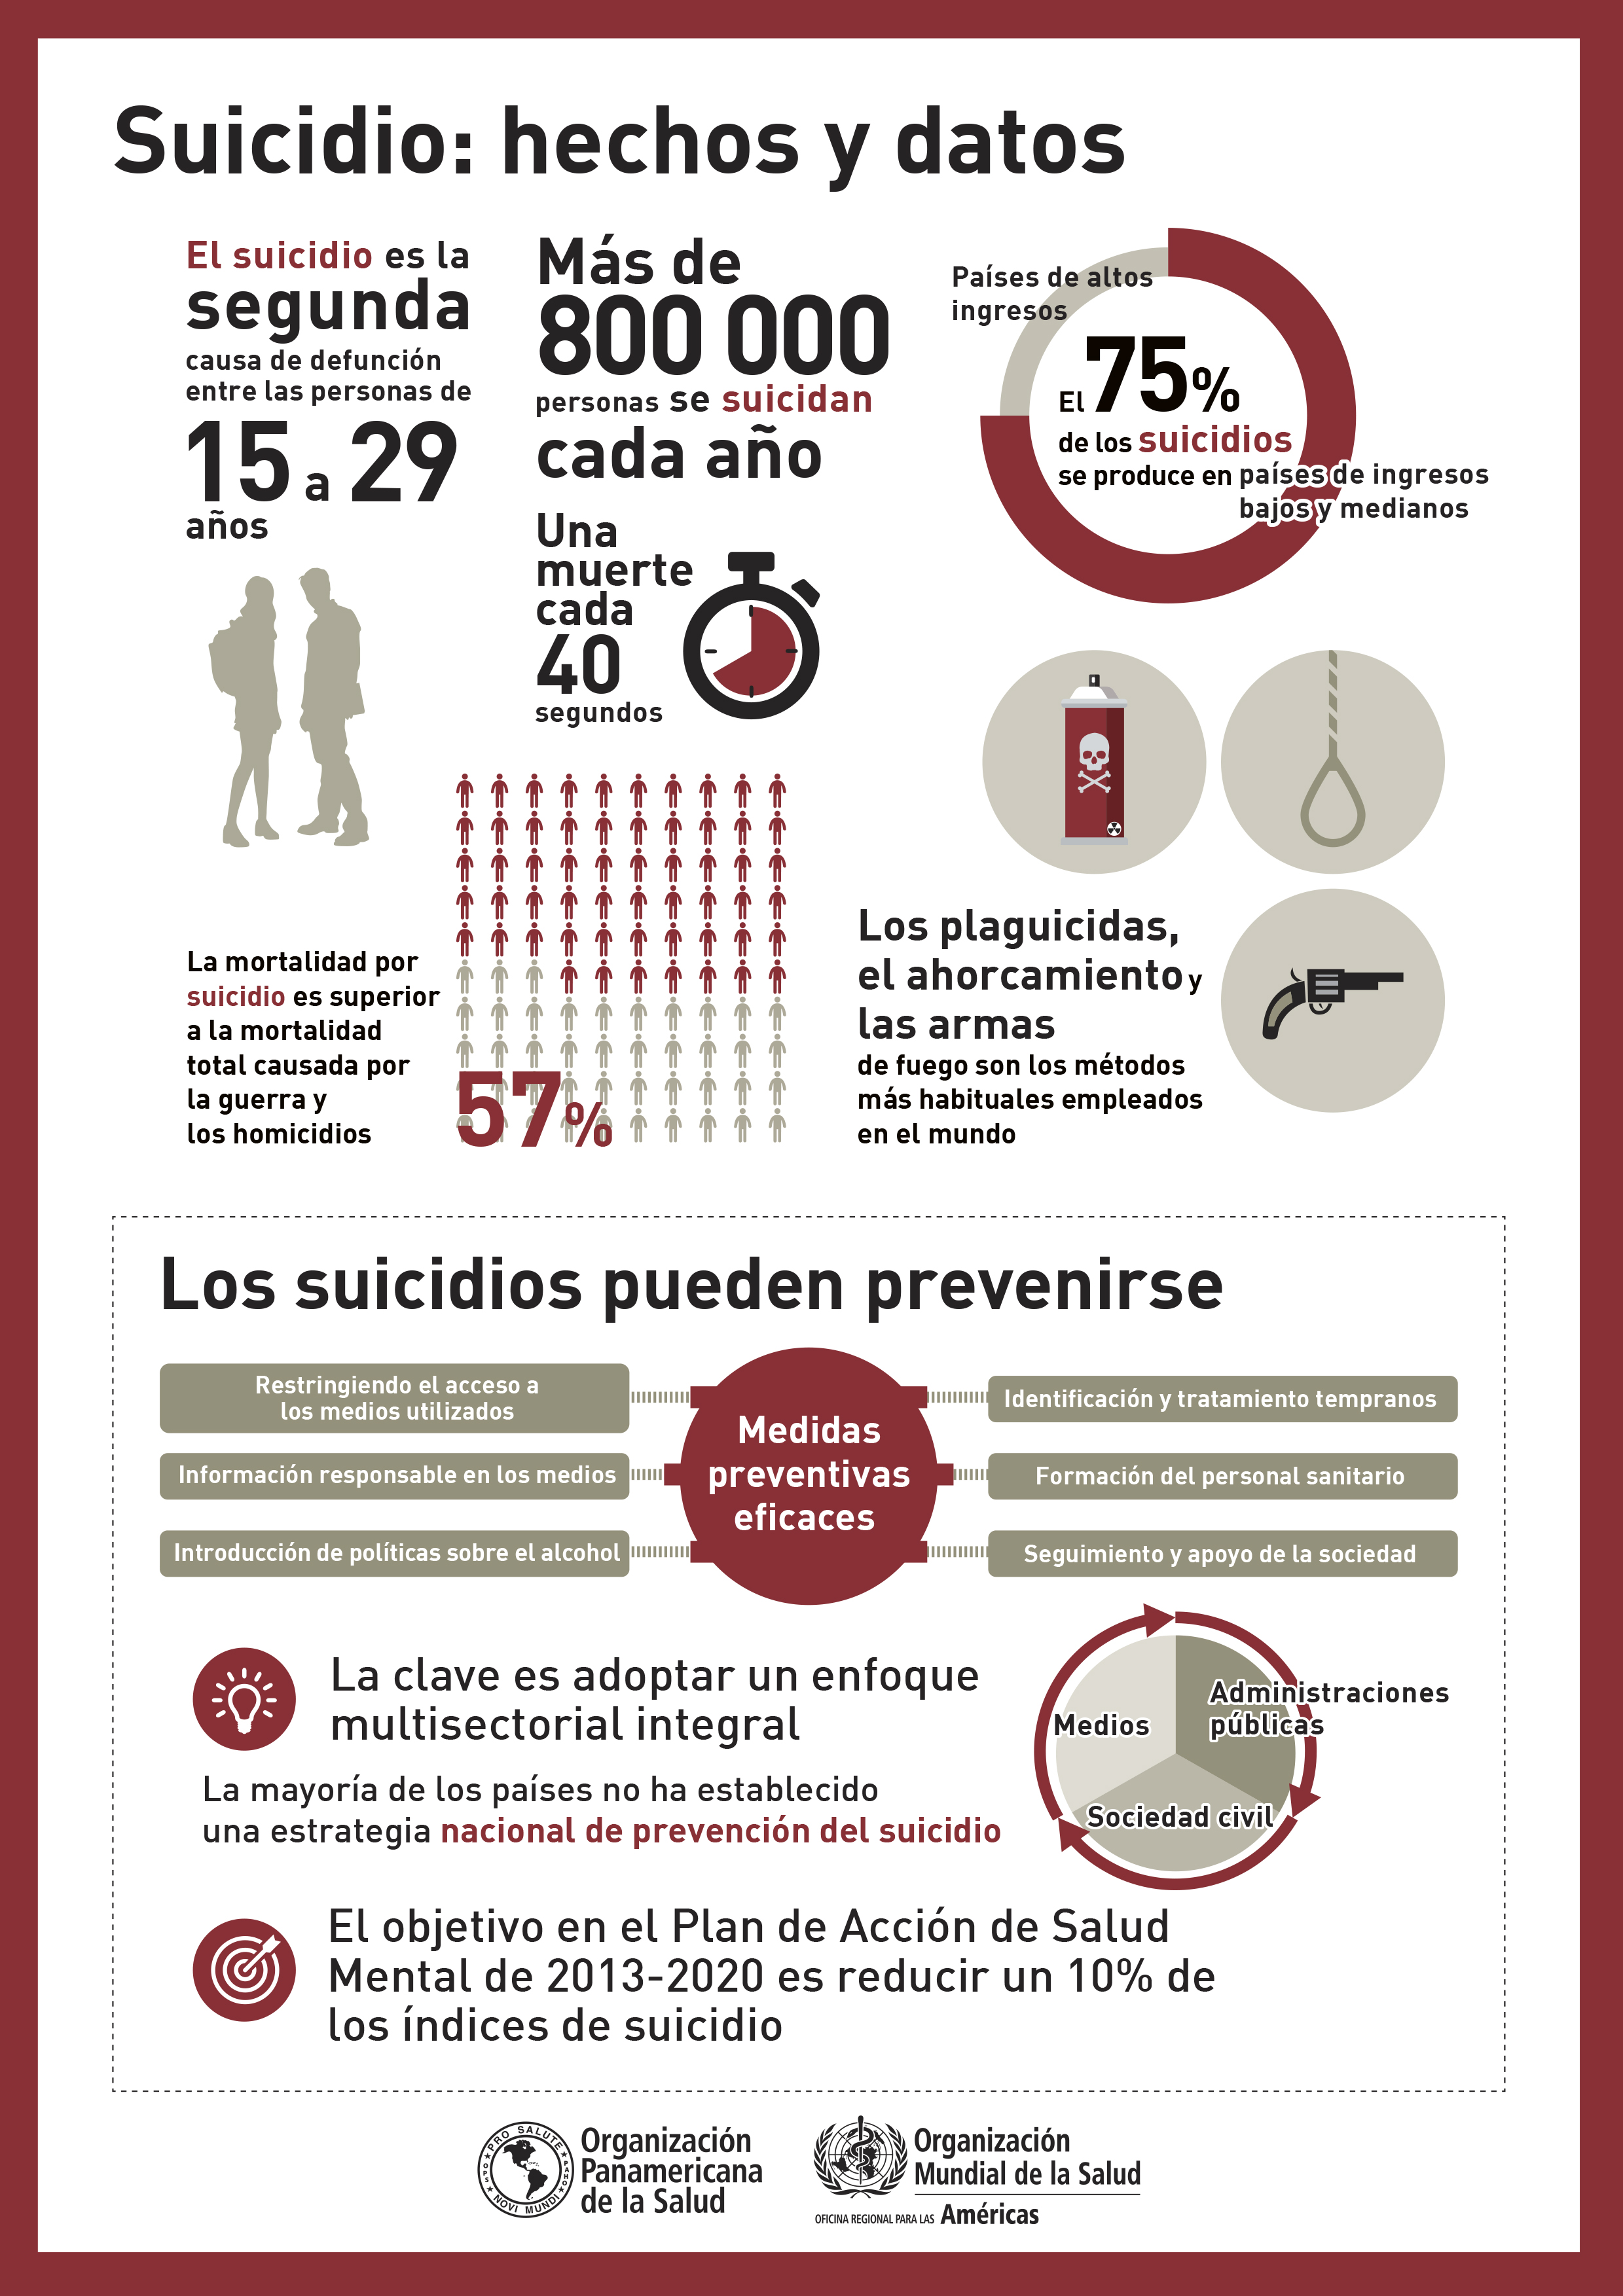 ¿Qué podemos hacer para prevenir el suicidio? 2